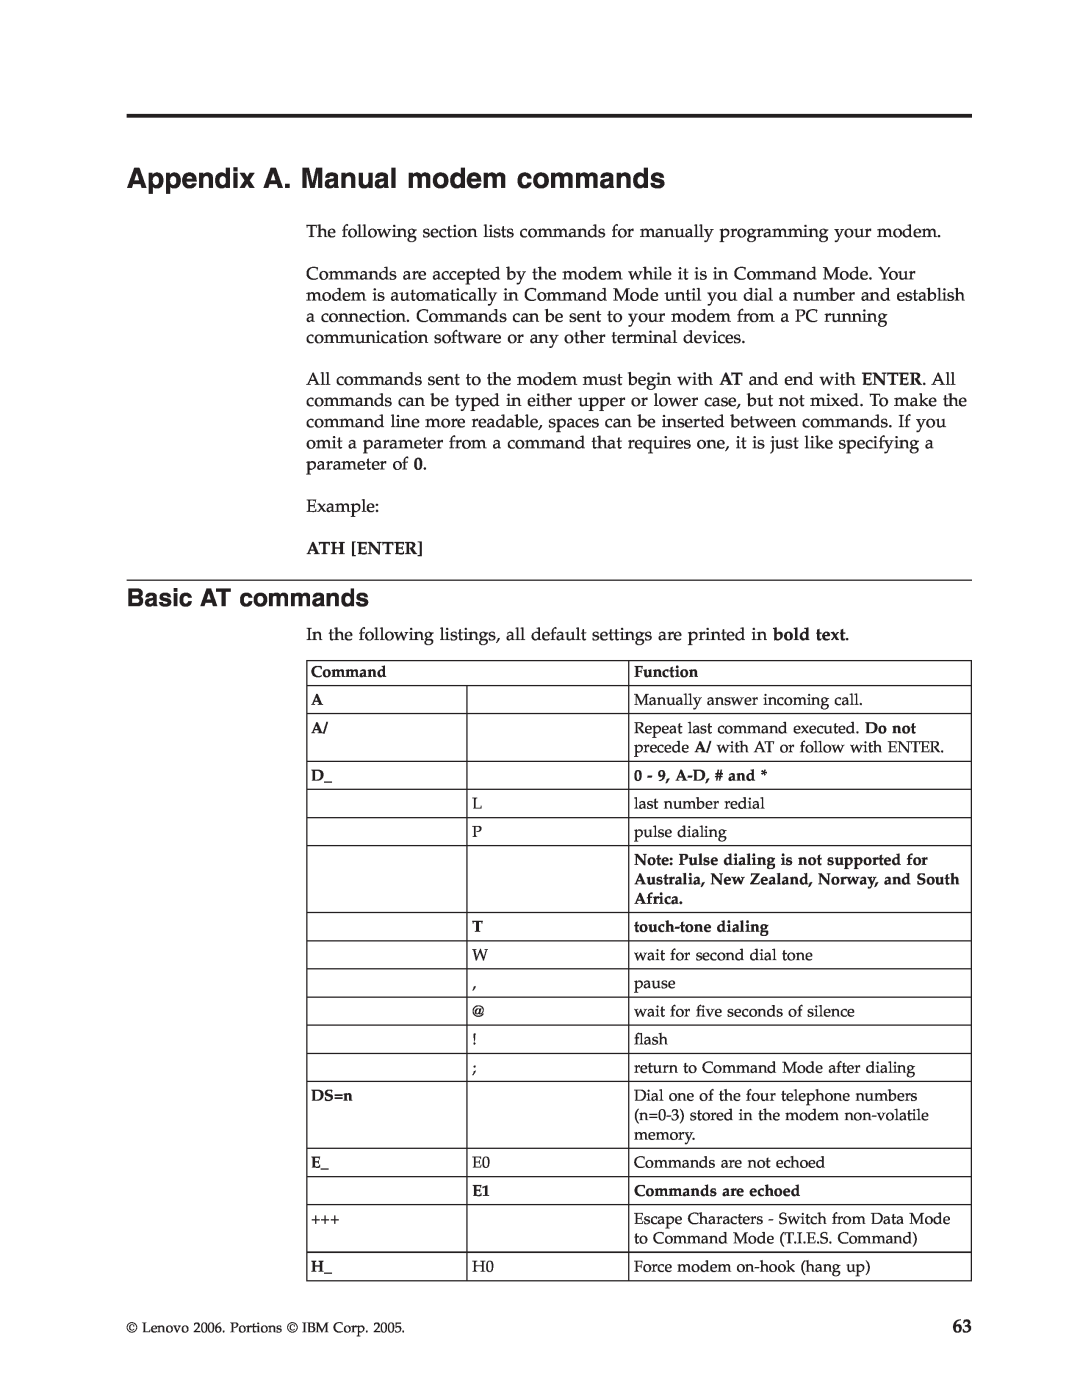 Lenovo 8808, 8813, 8796, 8800, 8804, 8792, 8010 manual Appendix A. Manual modem commands, Basic AT commands 